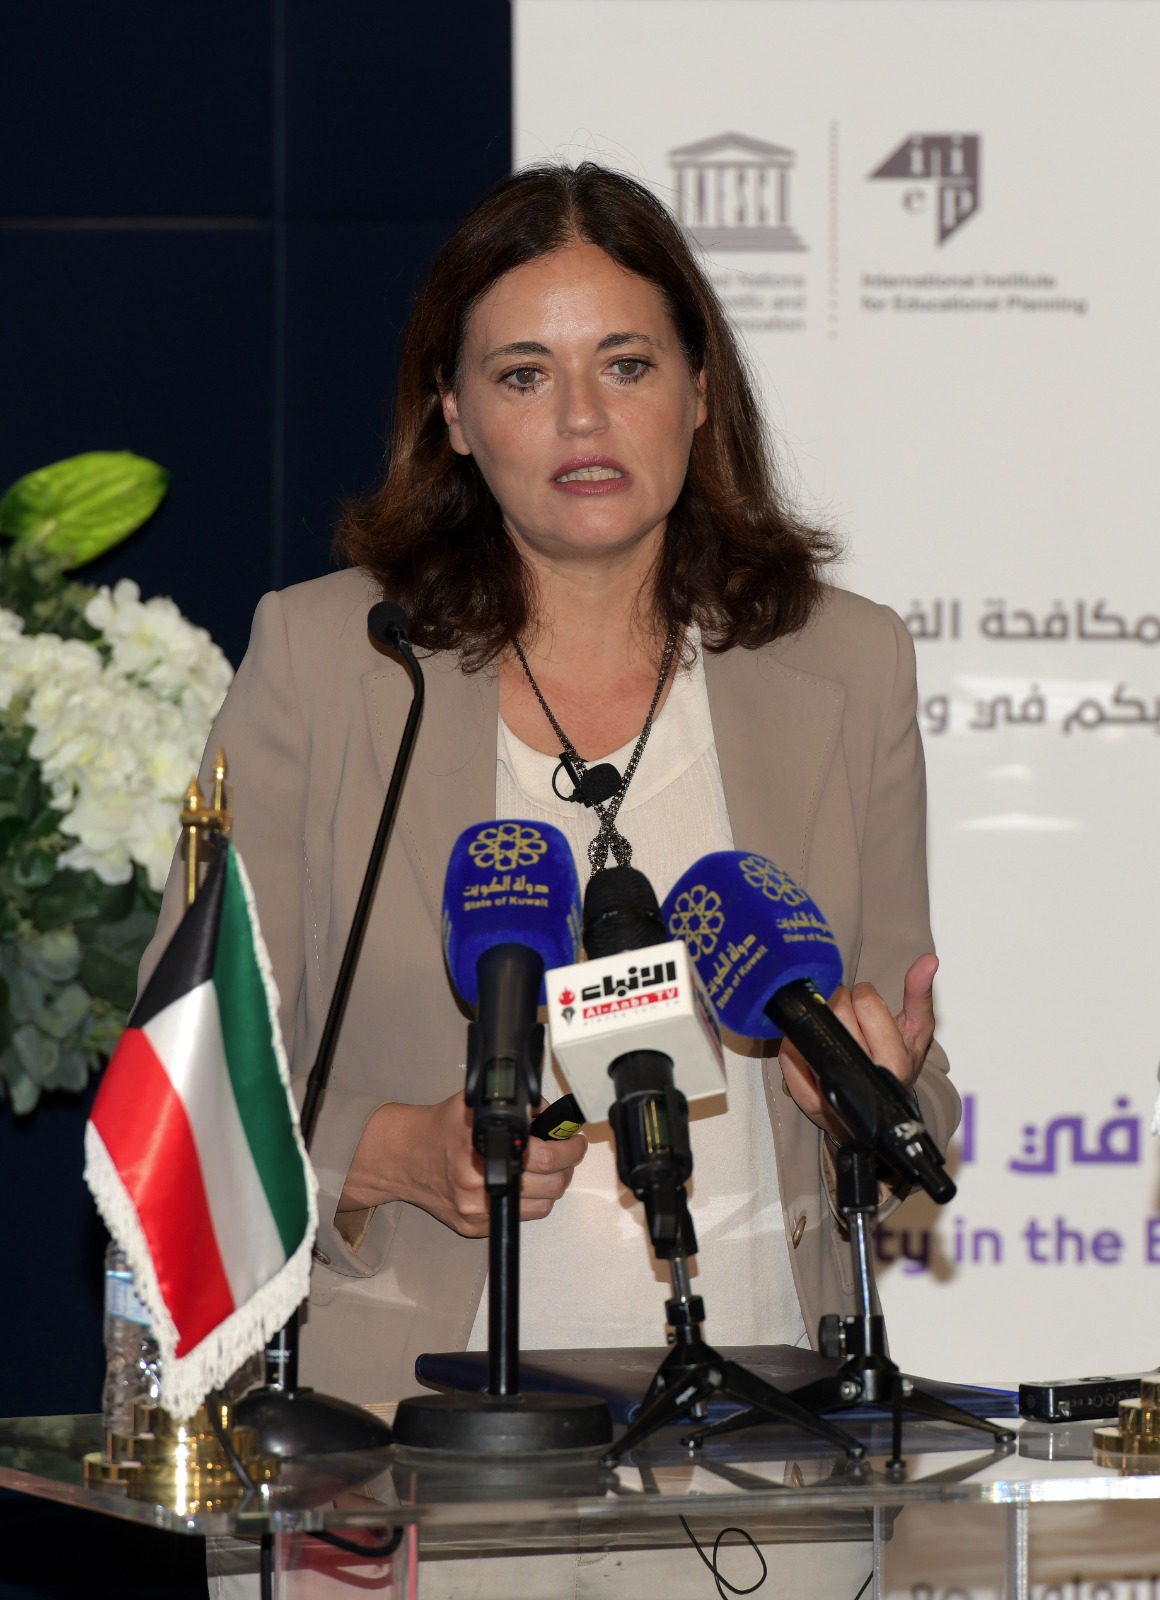 Muriel Poisson, del IIPE, dirigiéndose a los participantes en el taller de NAZAHA en Kuwait.